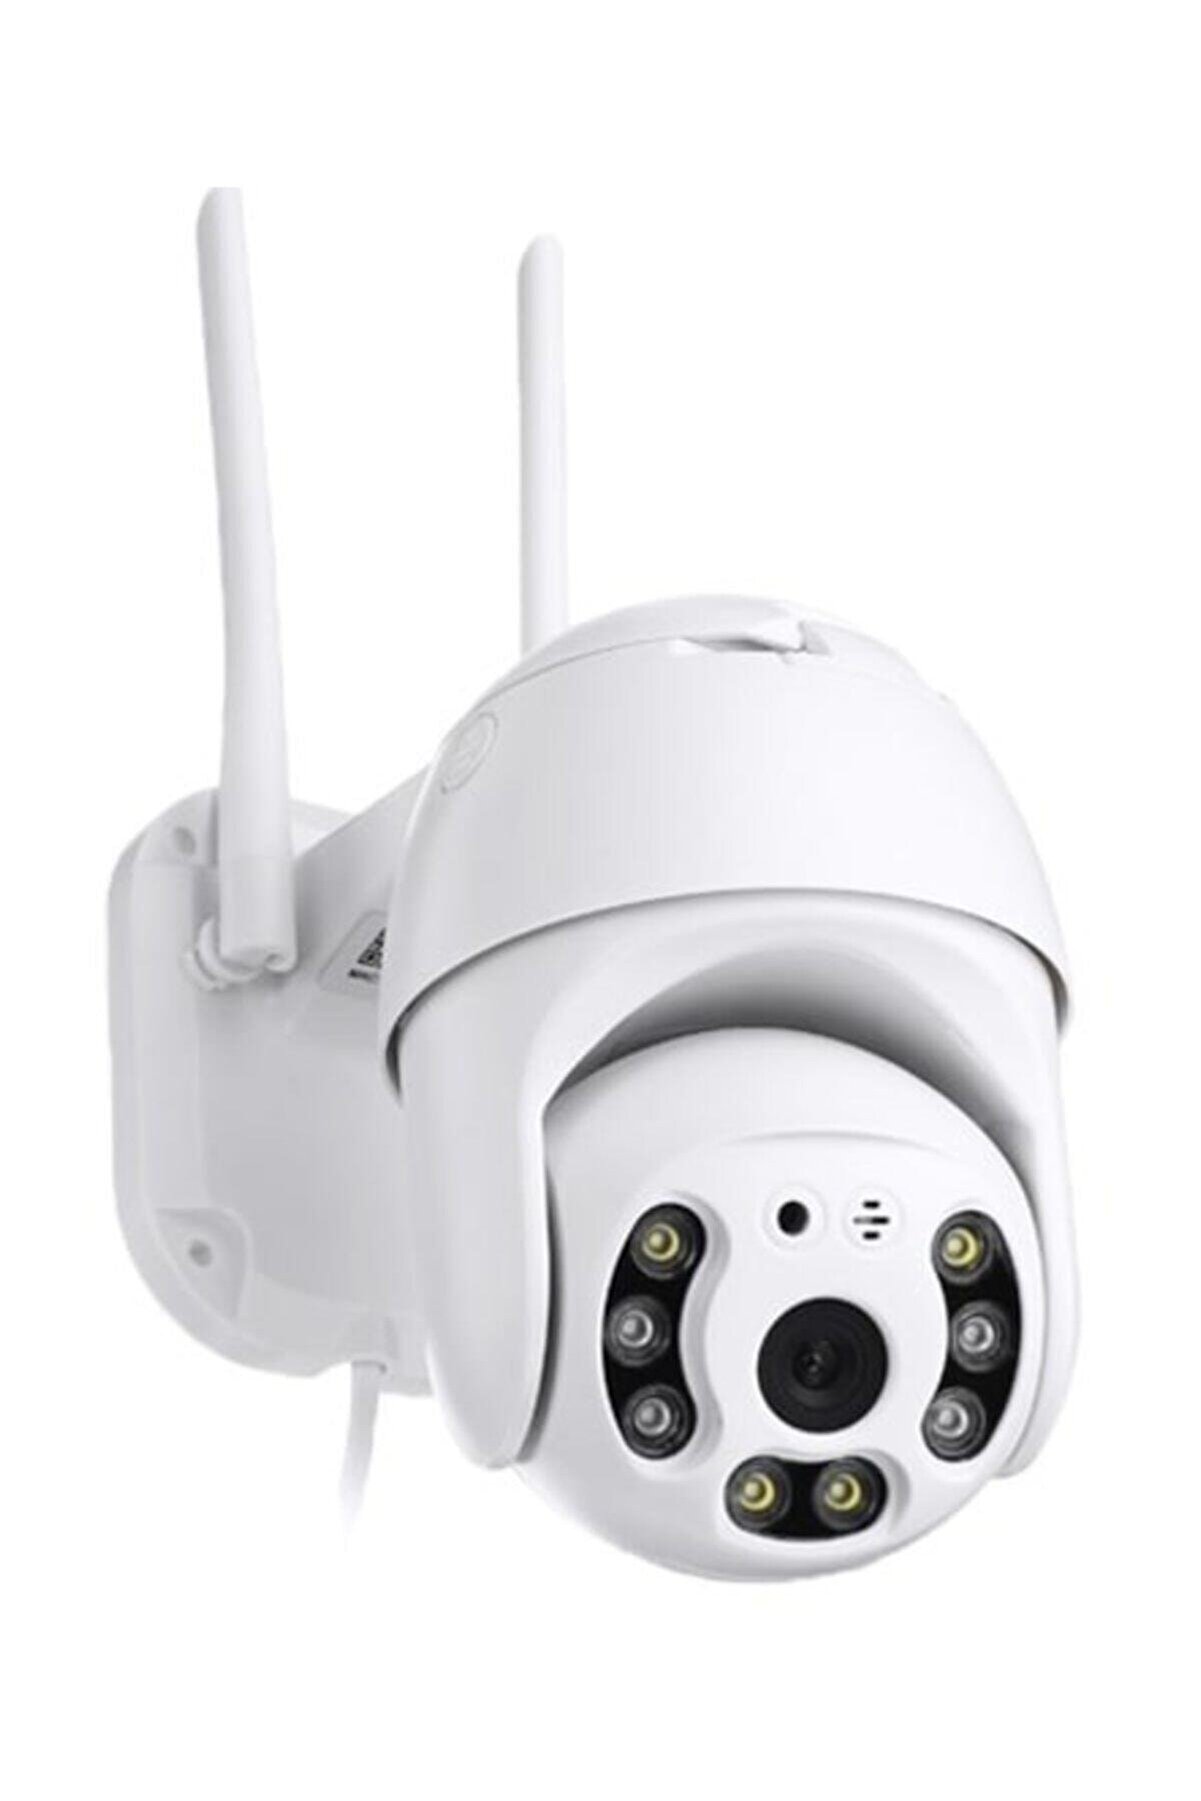 Ewee Güvenlik Kamerası Dönebilen Full Hd Wifi Ip Kamera Gece Görüşlü Kablosuz Cctv Kamera